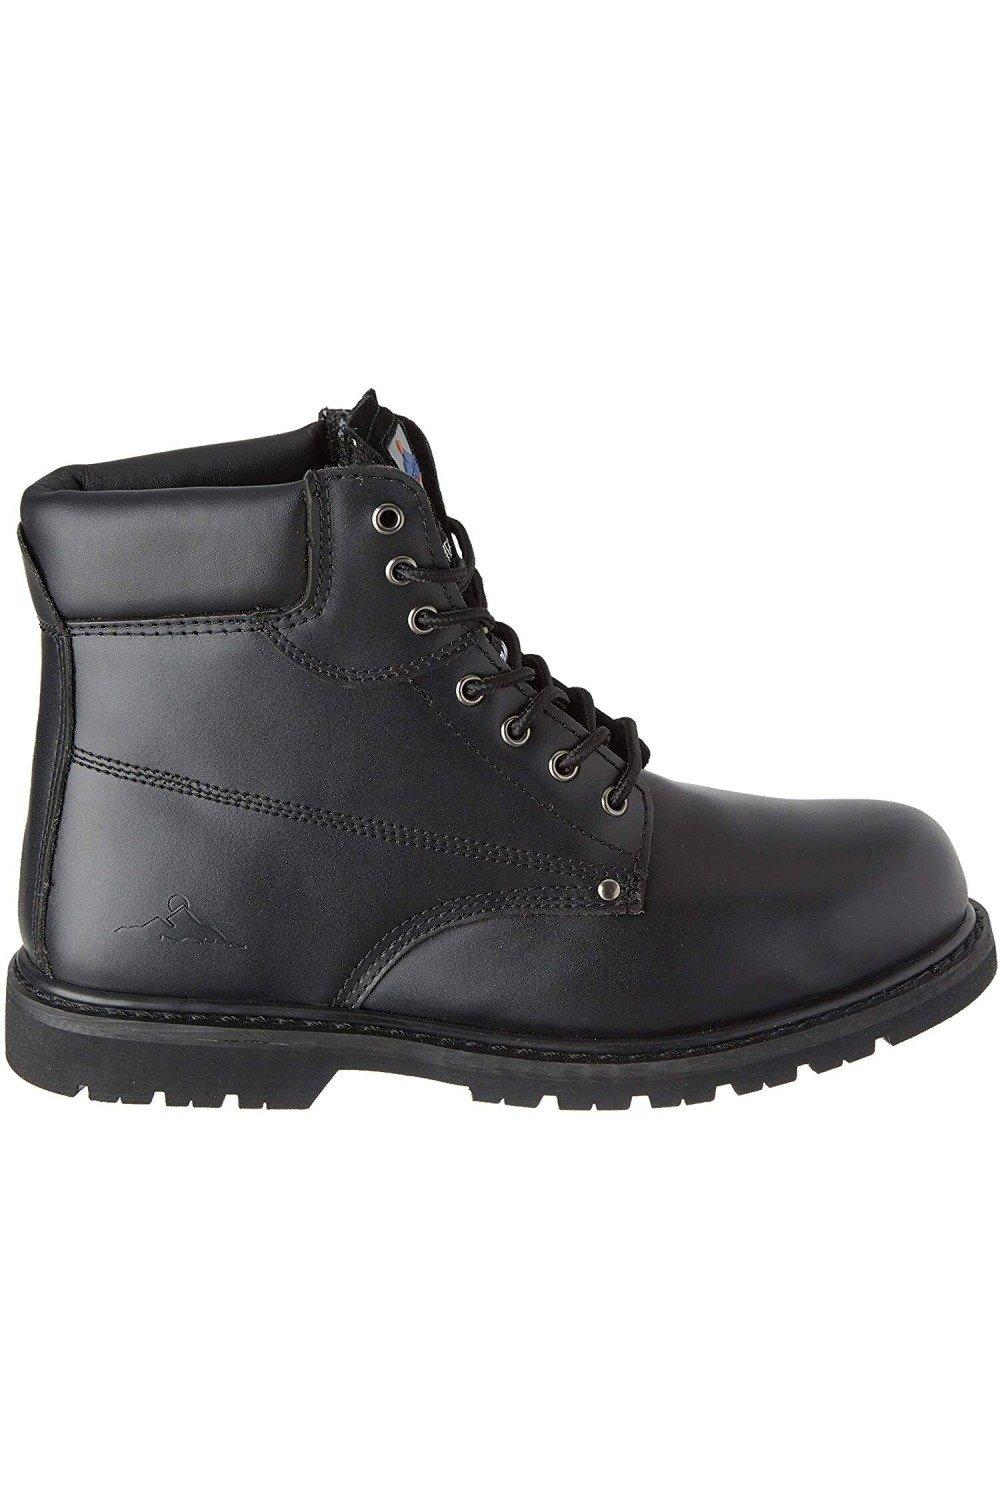 Кожаные защитные ботинки Steelite SBP HRO Portwest, черный